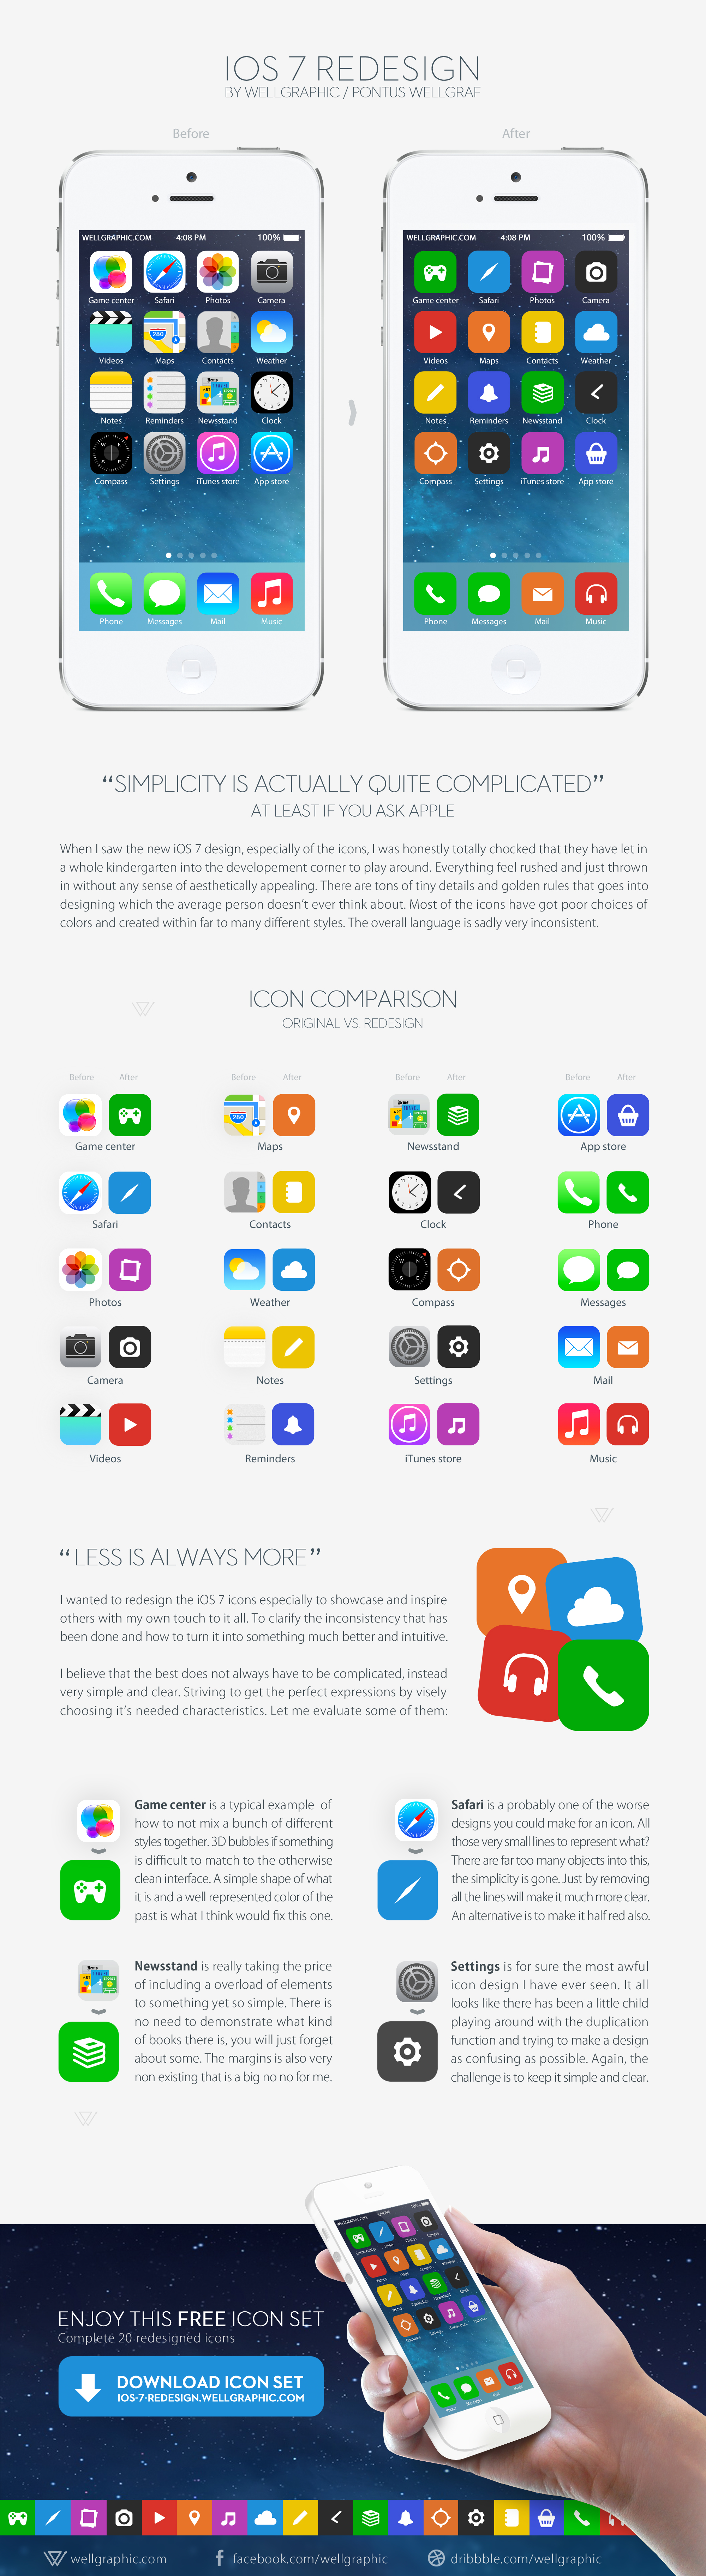 Apple iOS 7 Redesign